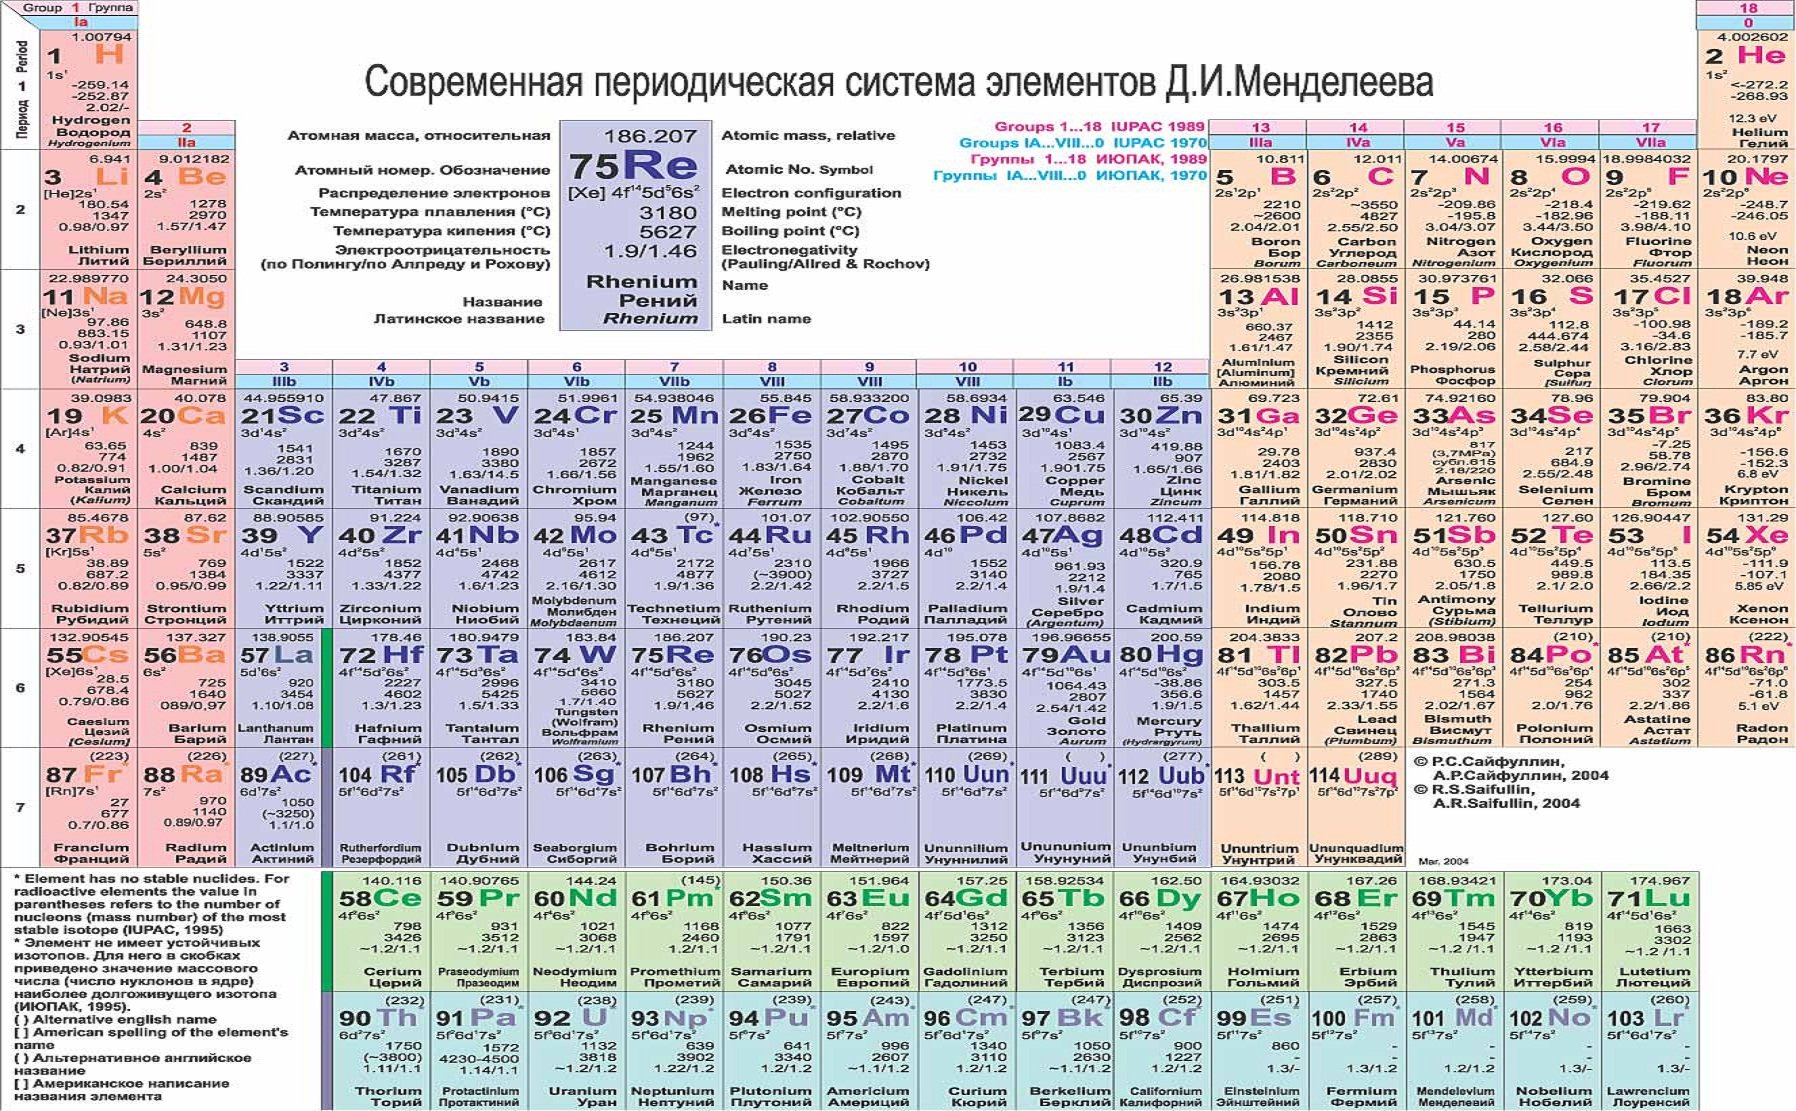 В четвертой группе периодической. Таблица периодическая система химических элементов д.и.Менделеева. Современная таблица Менделеева 118 элементов. Современная таблица Менделеева 126 элементов. Периодическая система Менделеева 1869.